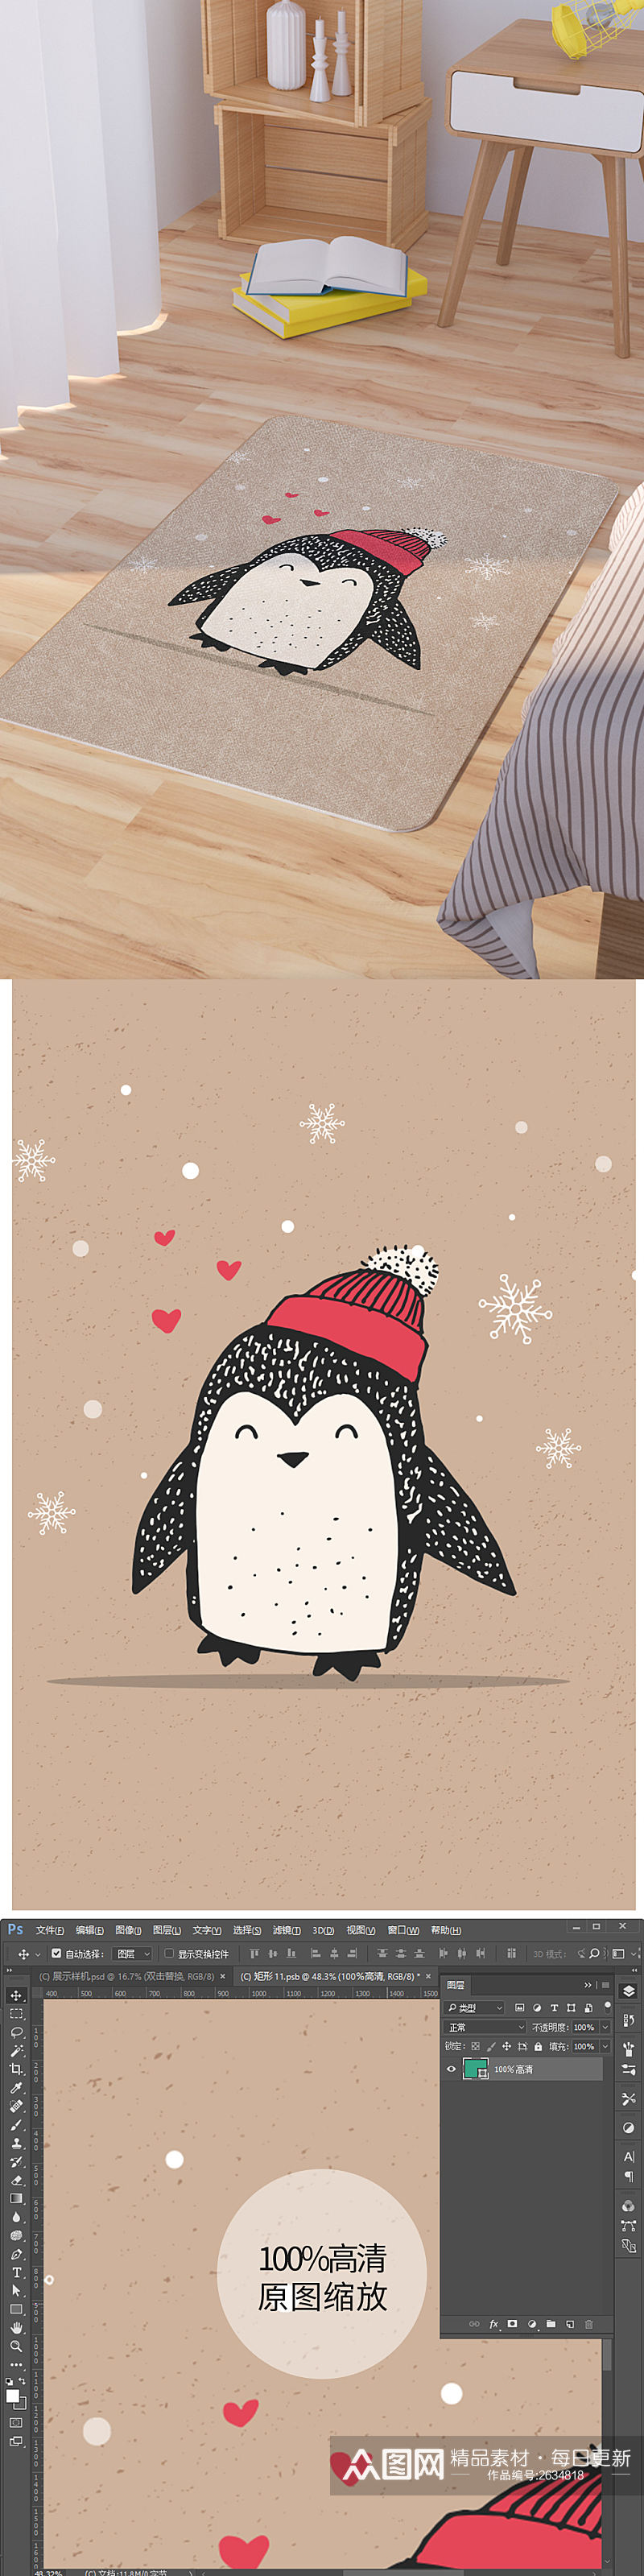 矢量手绘卡通可爱企鹅脚垫地毯图案素材